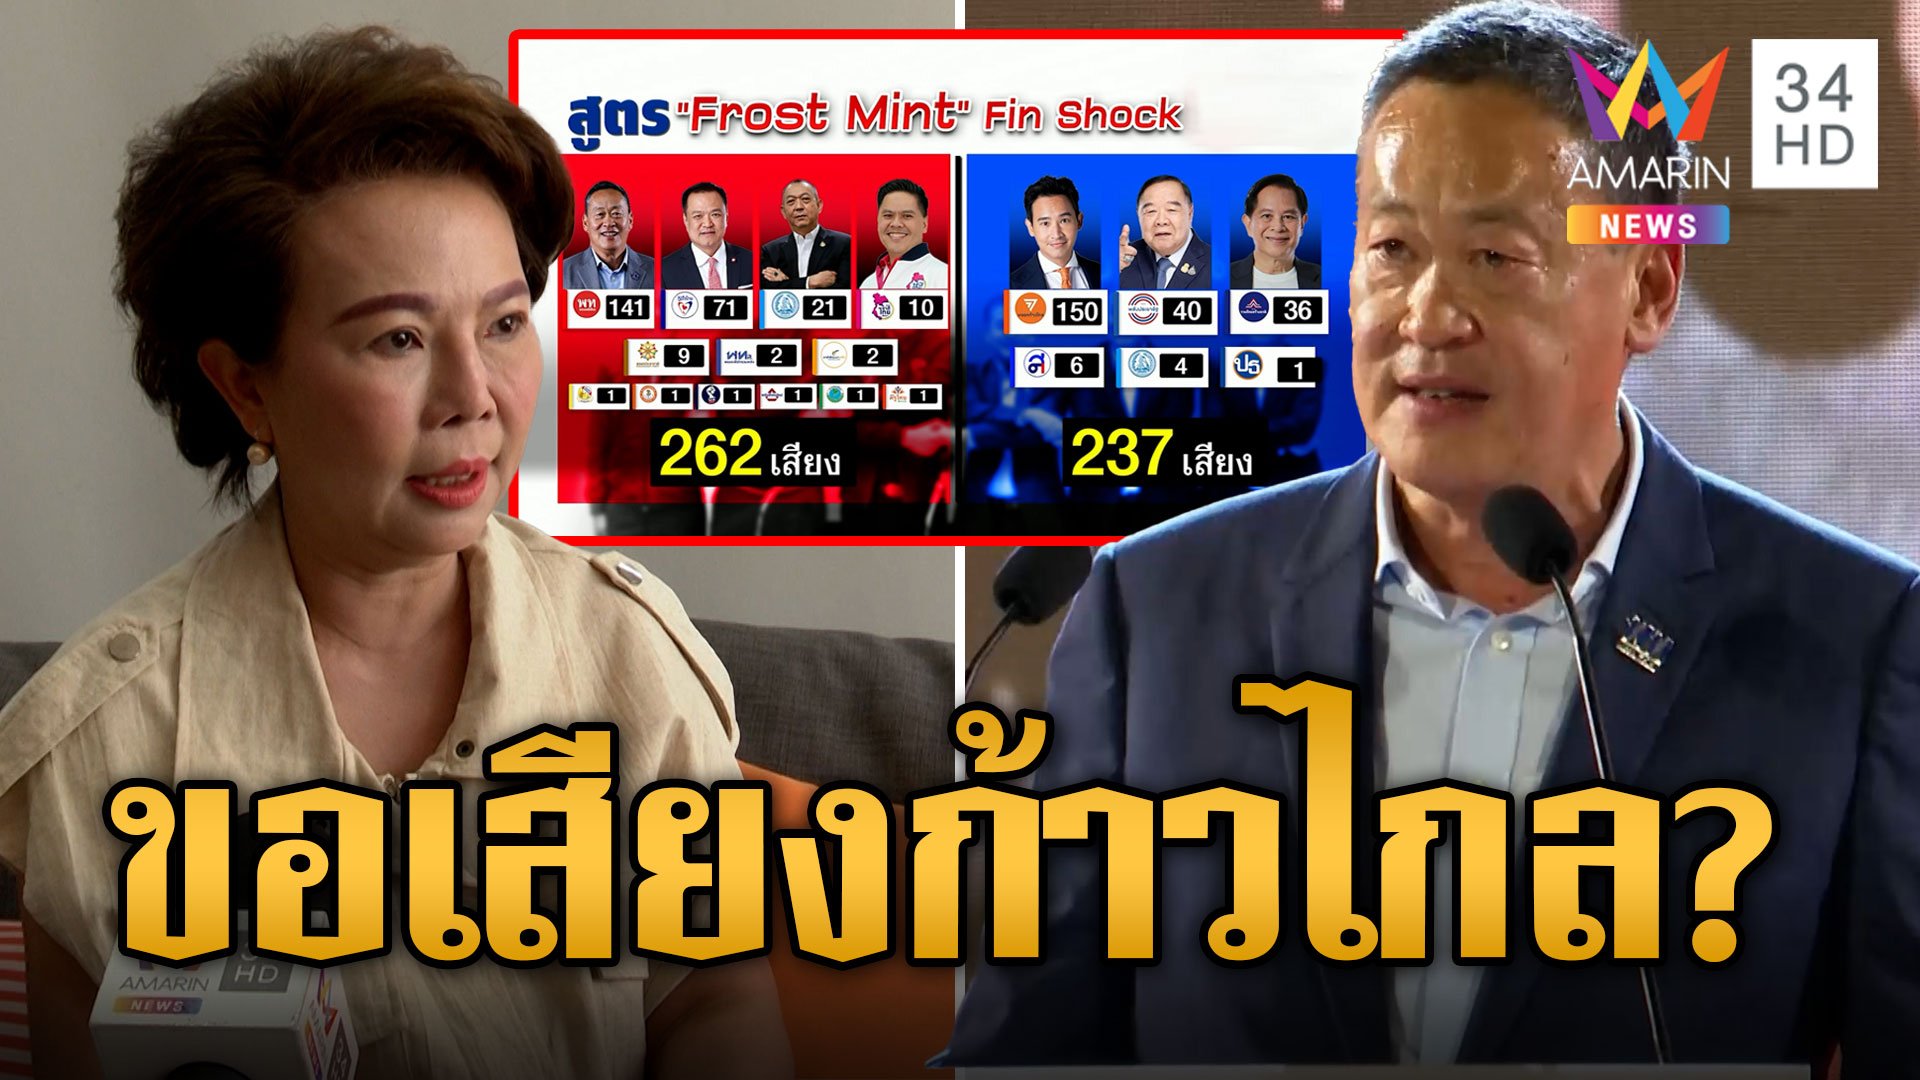 "อมรัตน์" โอดครวญหาเพื่อไทยหวนจับมือก้าวไกล เปิดสูตรงูเห่าหอบคนร่วมรัฐบาลเพื่อไทย | ข่าวอรุณอมรินทร์ | 9 ส.ค. 66 | AMARIN TVHD34